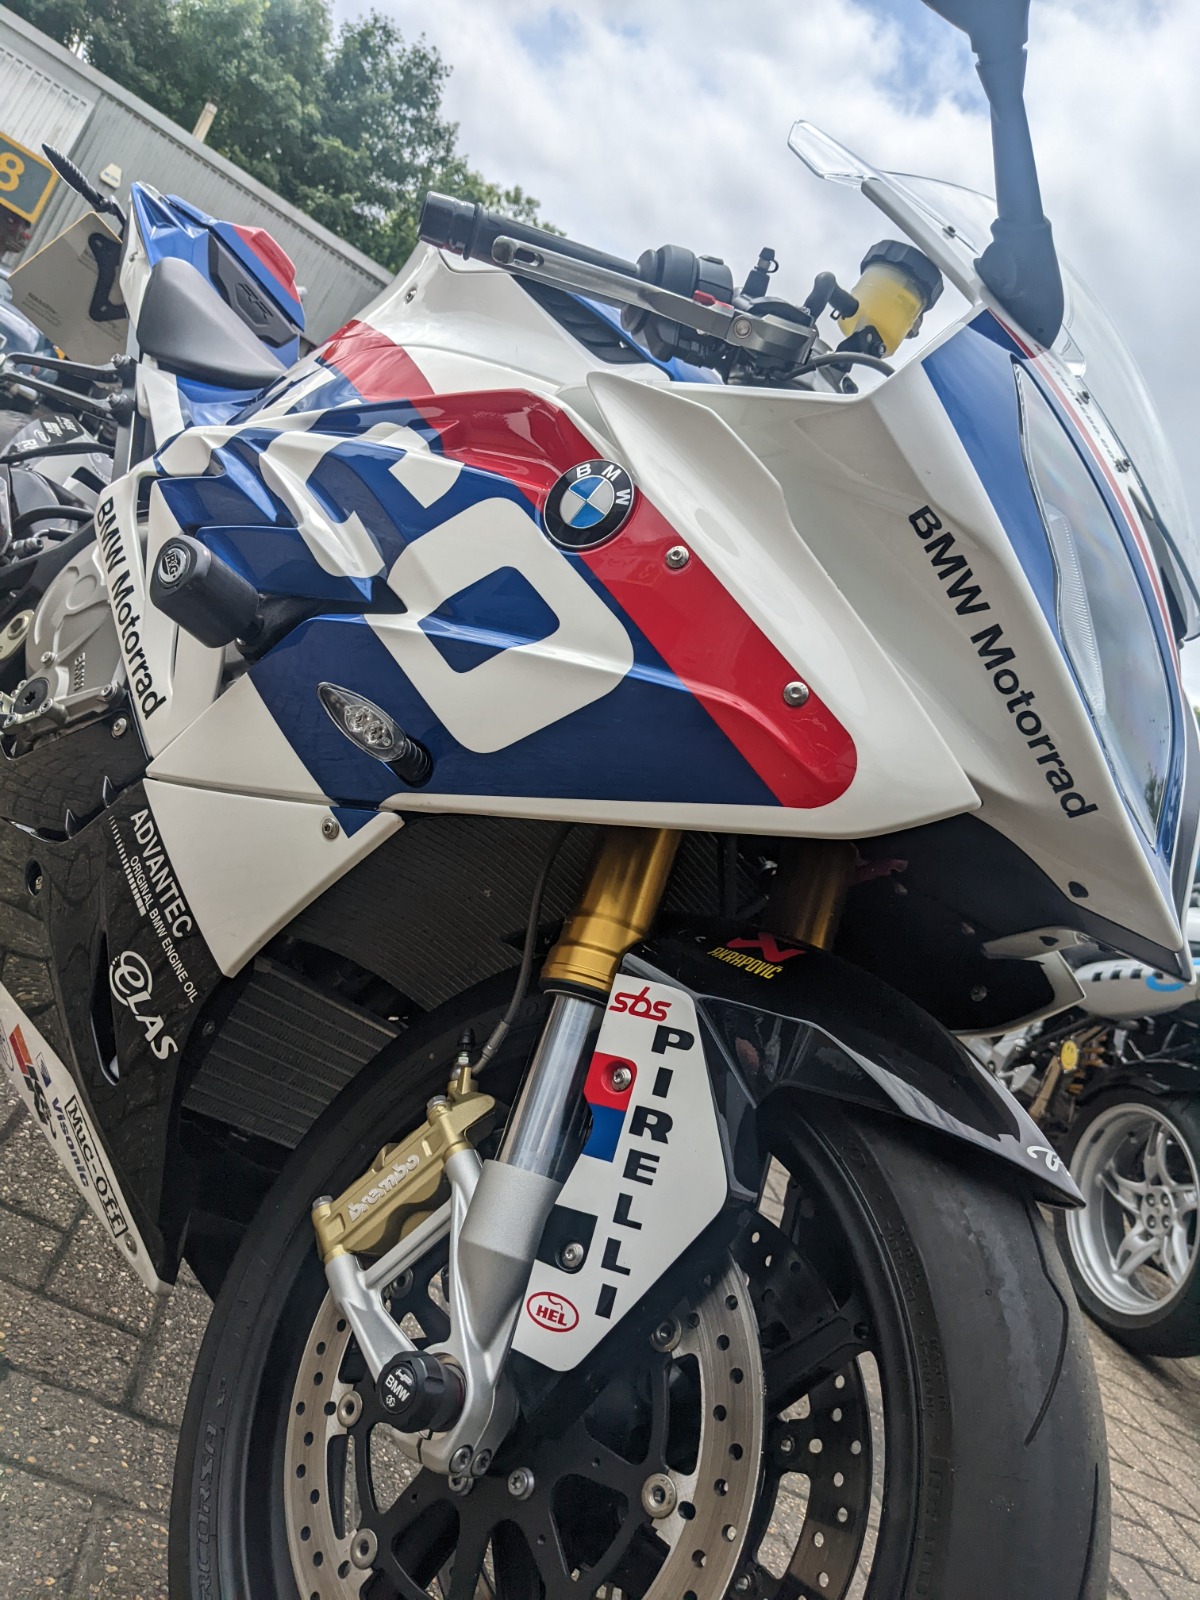 BMW Motorbike Repairs Twickenham And West London